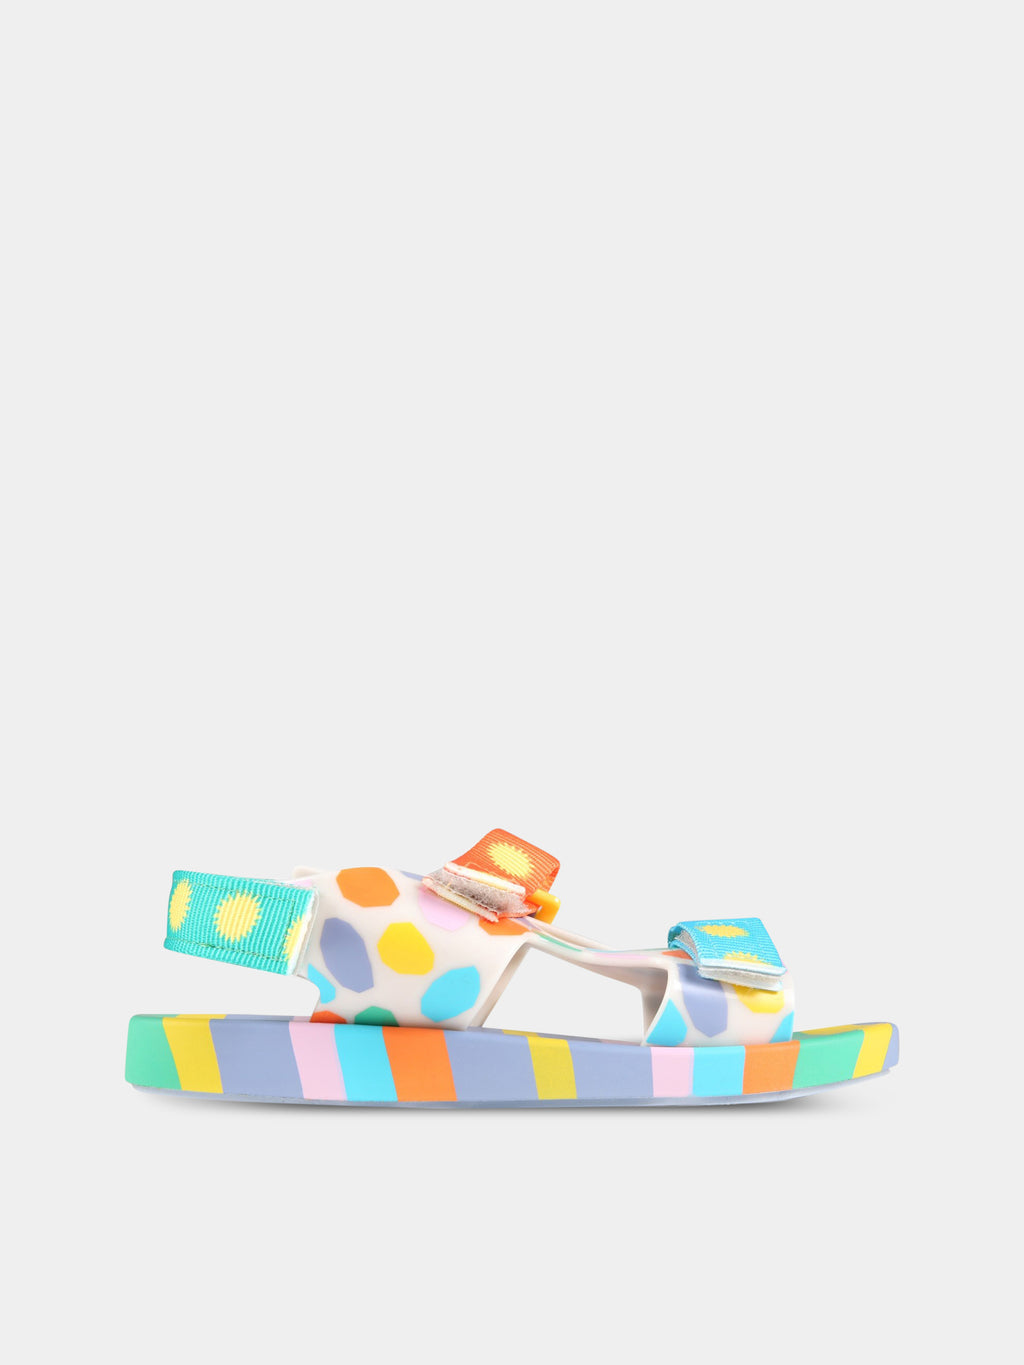 Sandales multicolores pour enfants avec impressions